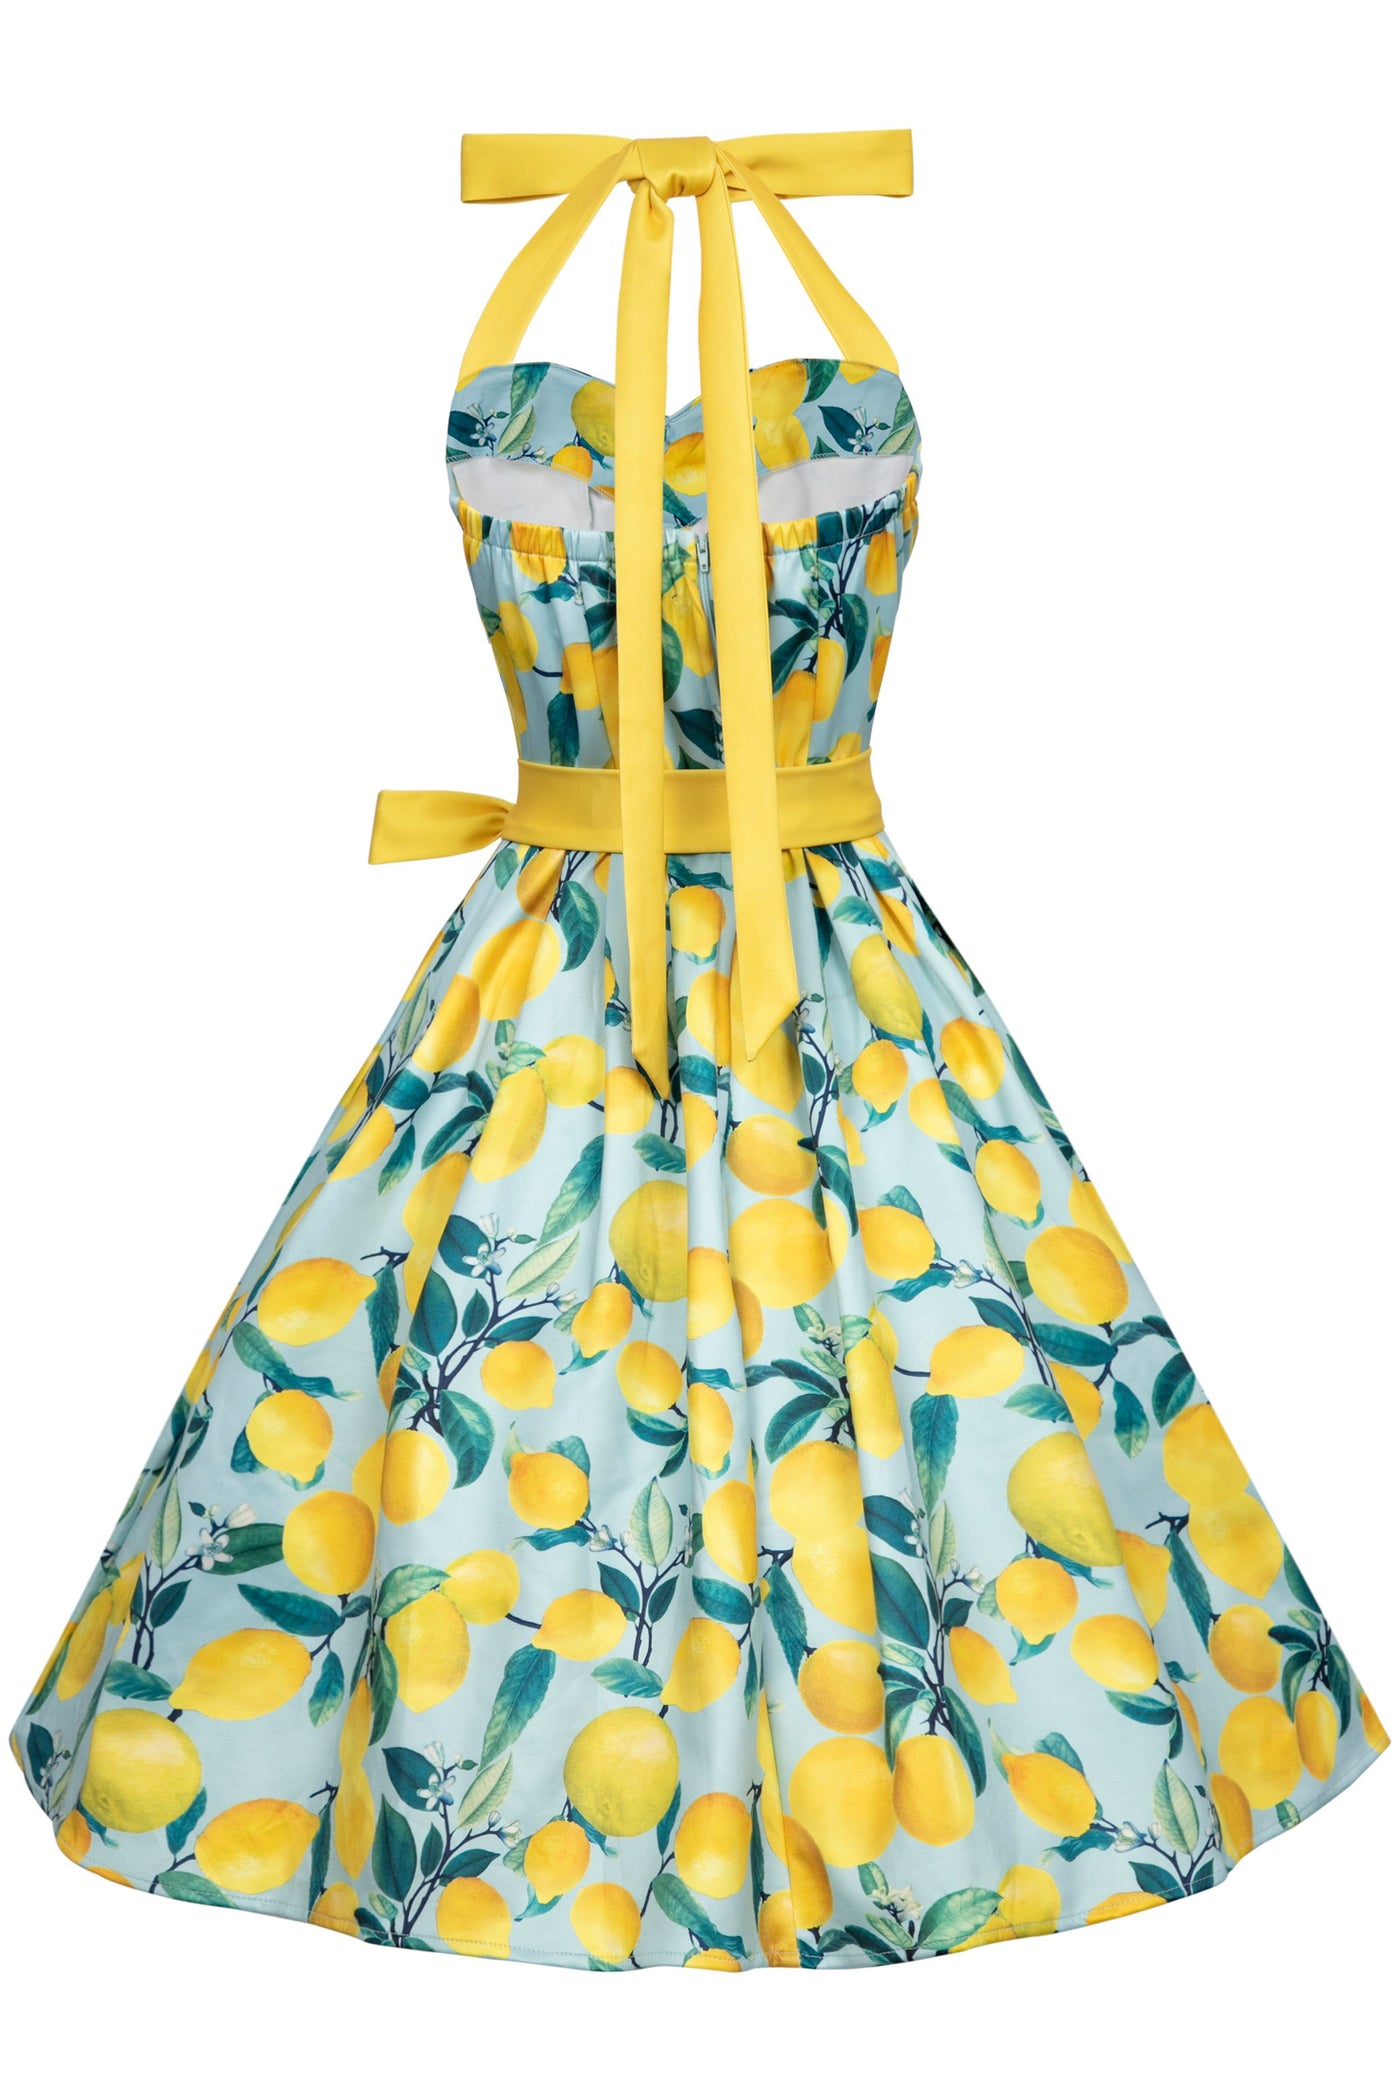 Sophia Halter Neck Blue Lemon Swing Dress